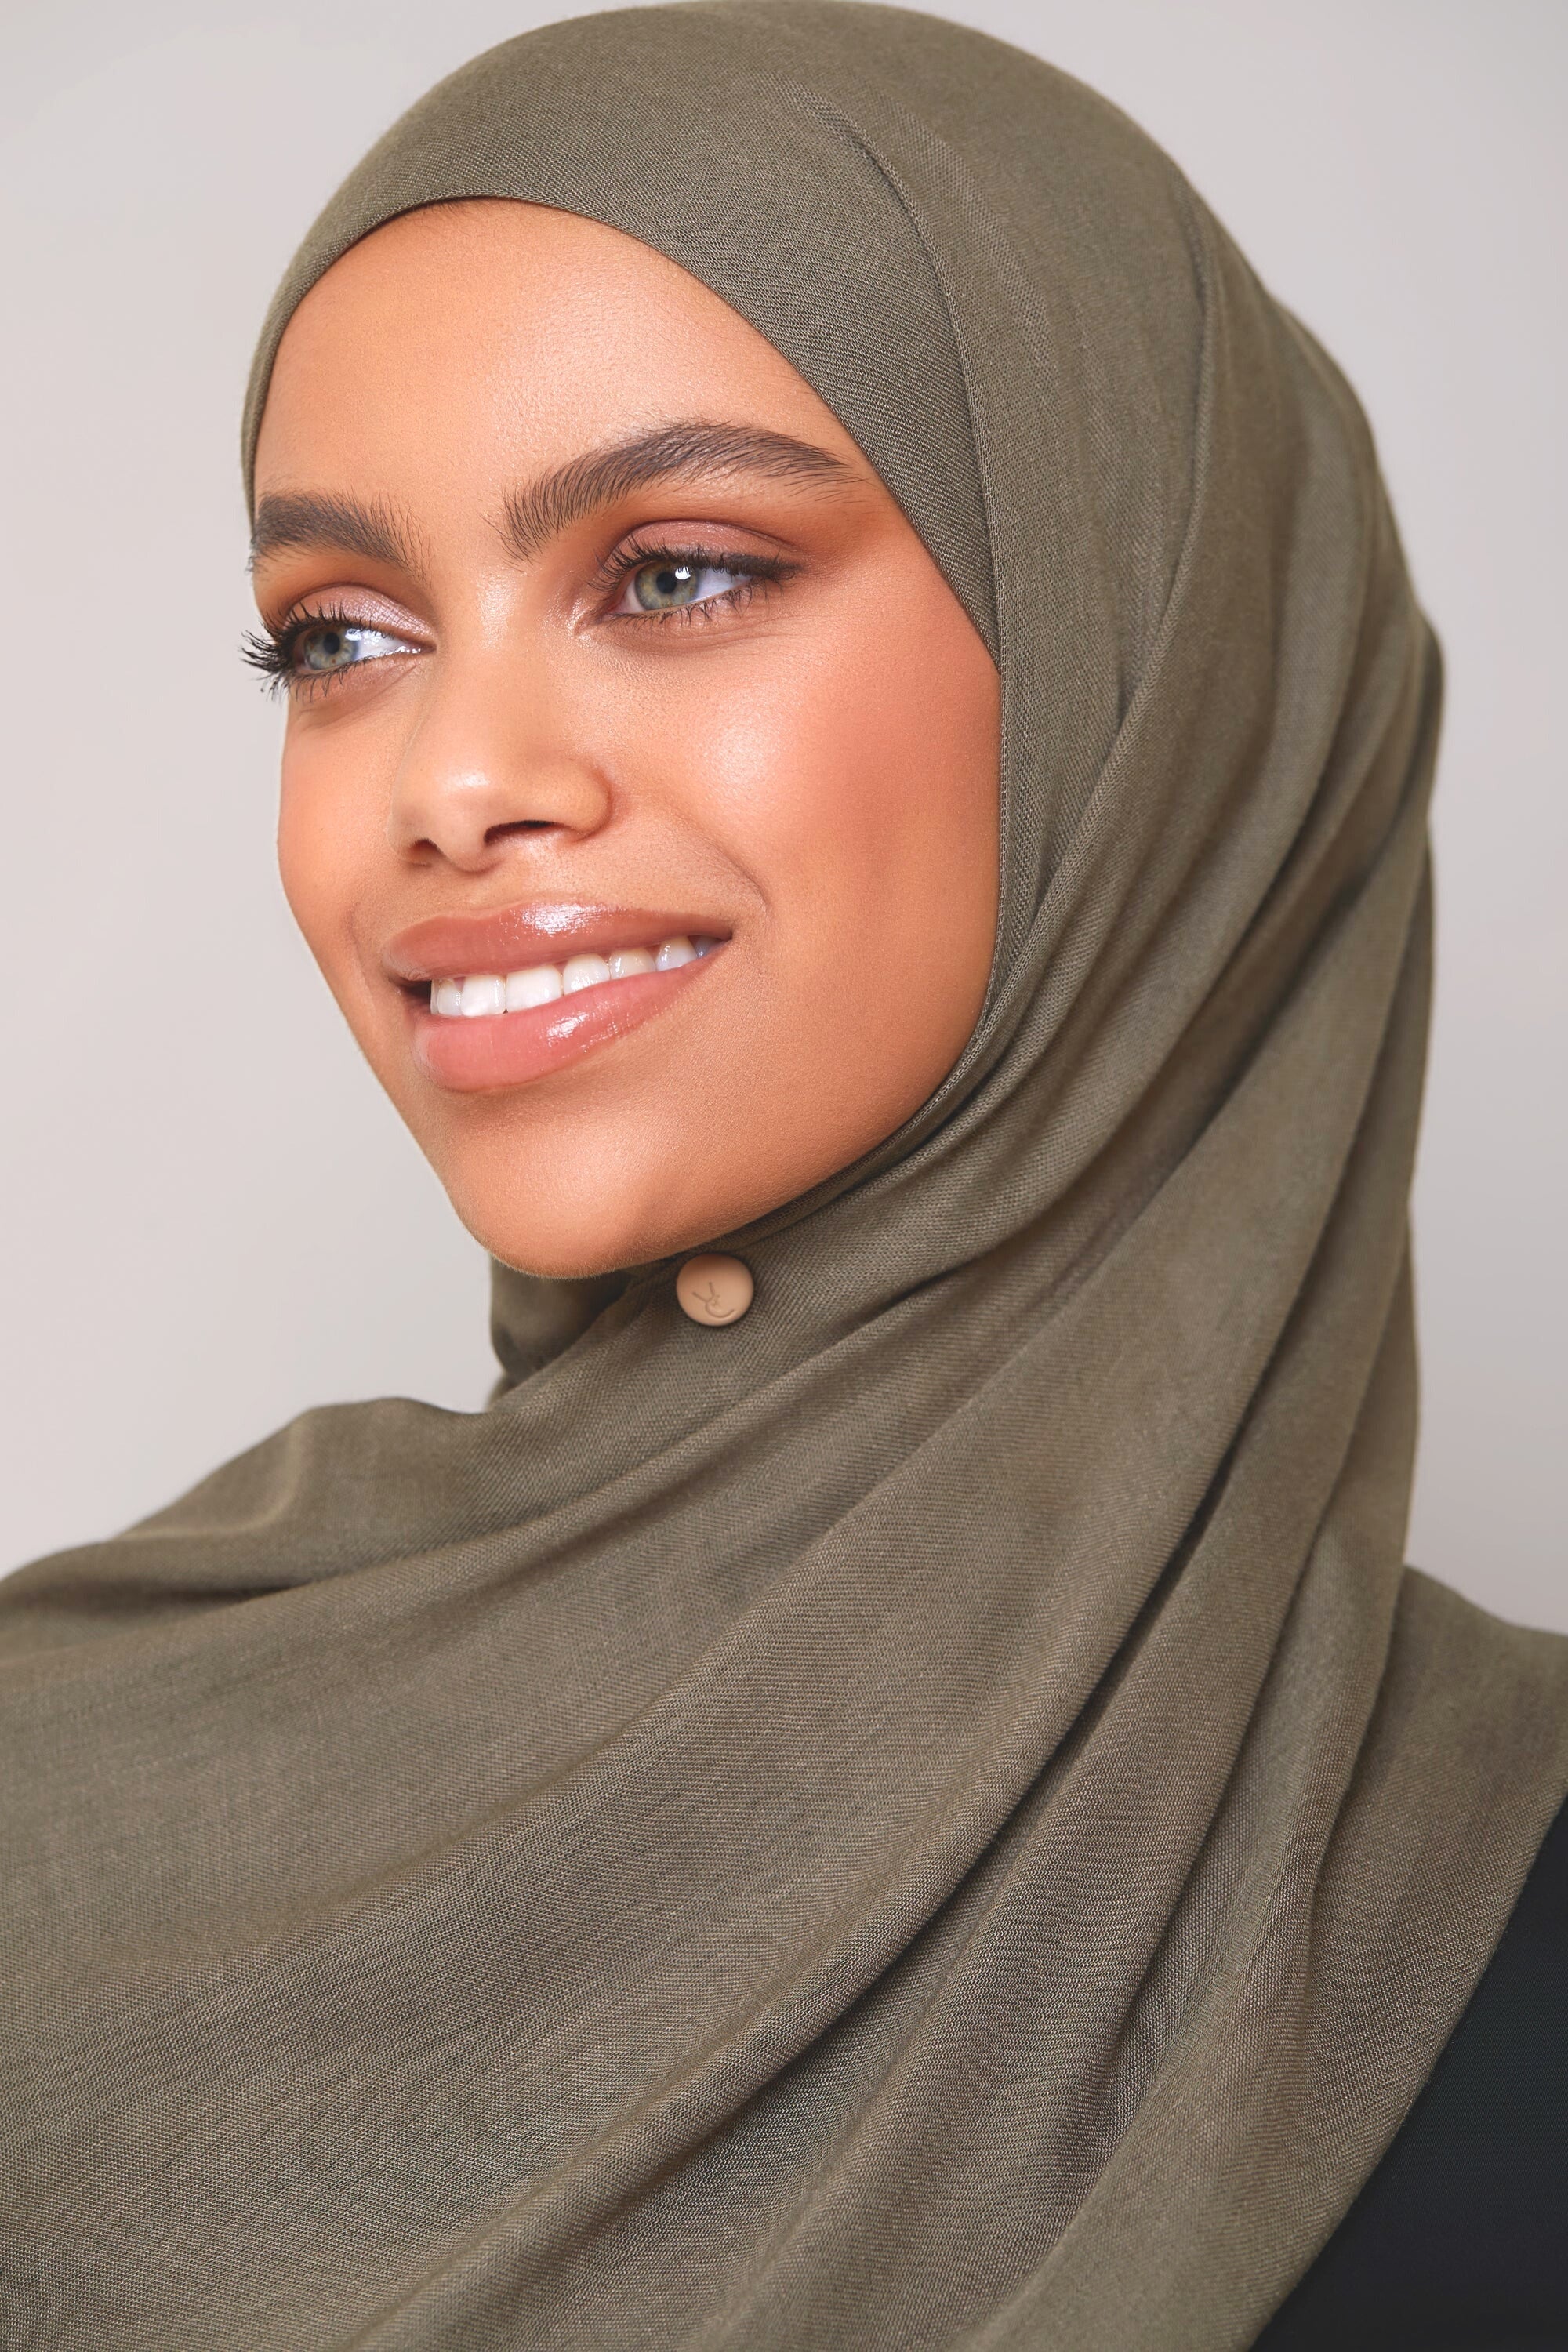 Modal Hijab - Kalamata Veiled 